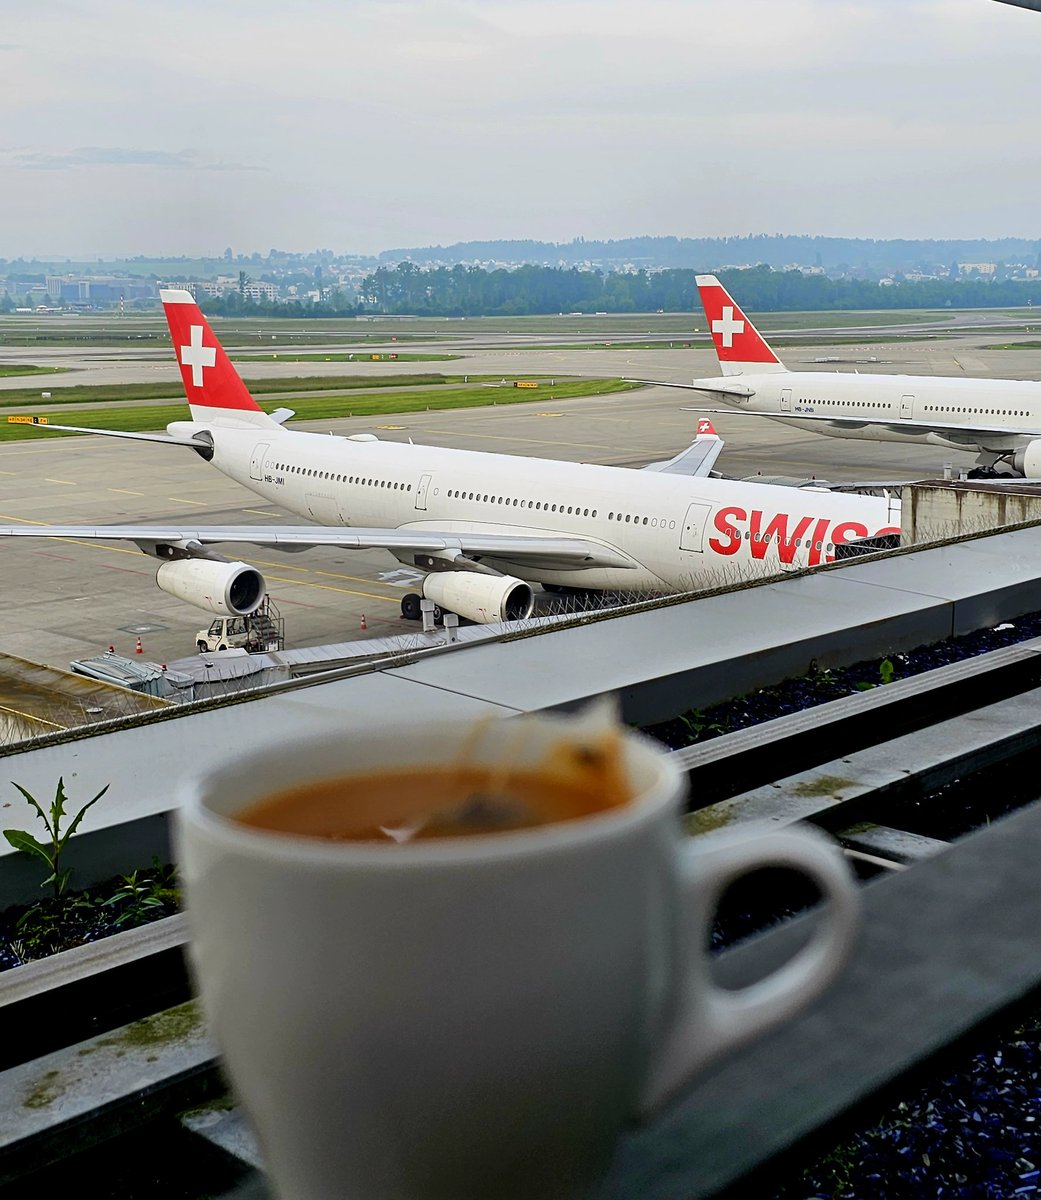 Happy International Tea Day @ Zurich Airport. ❣️